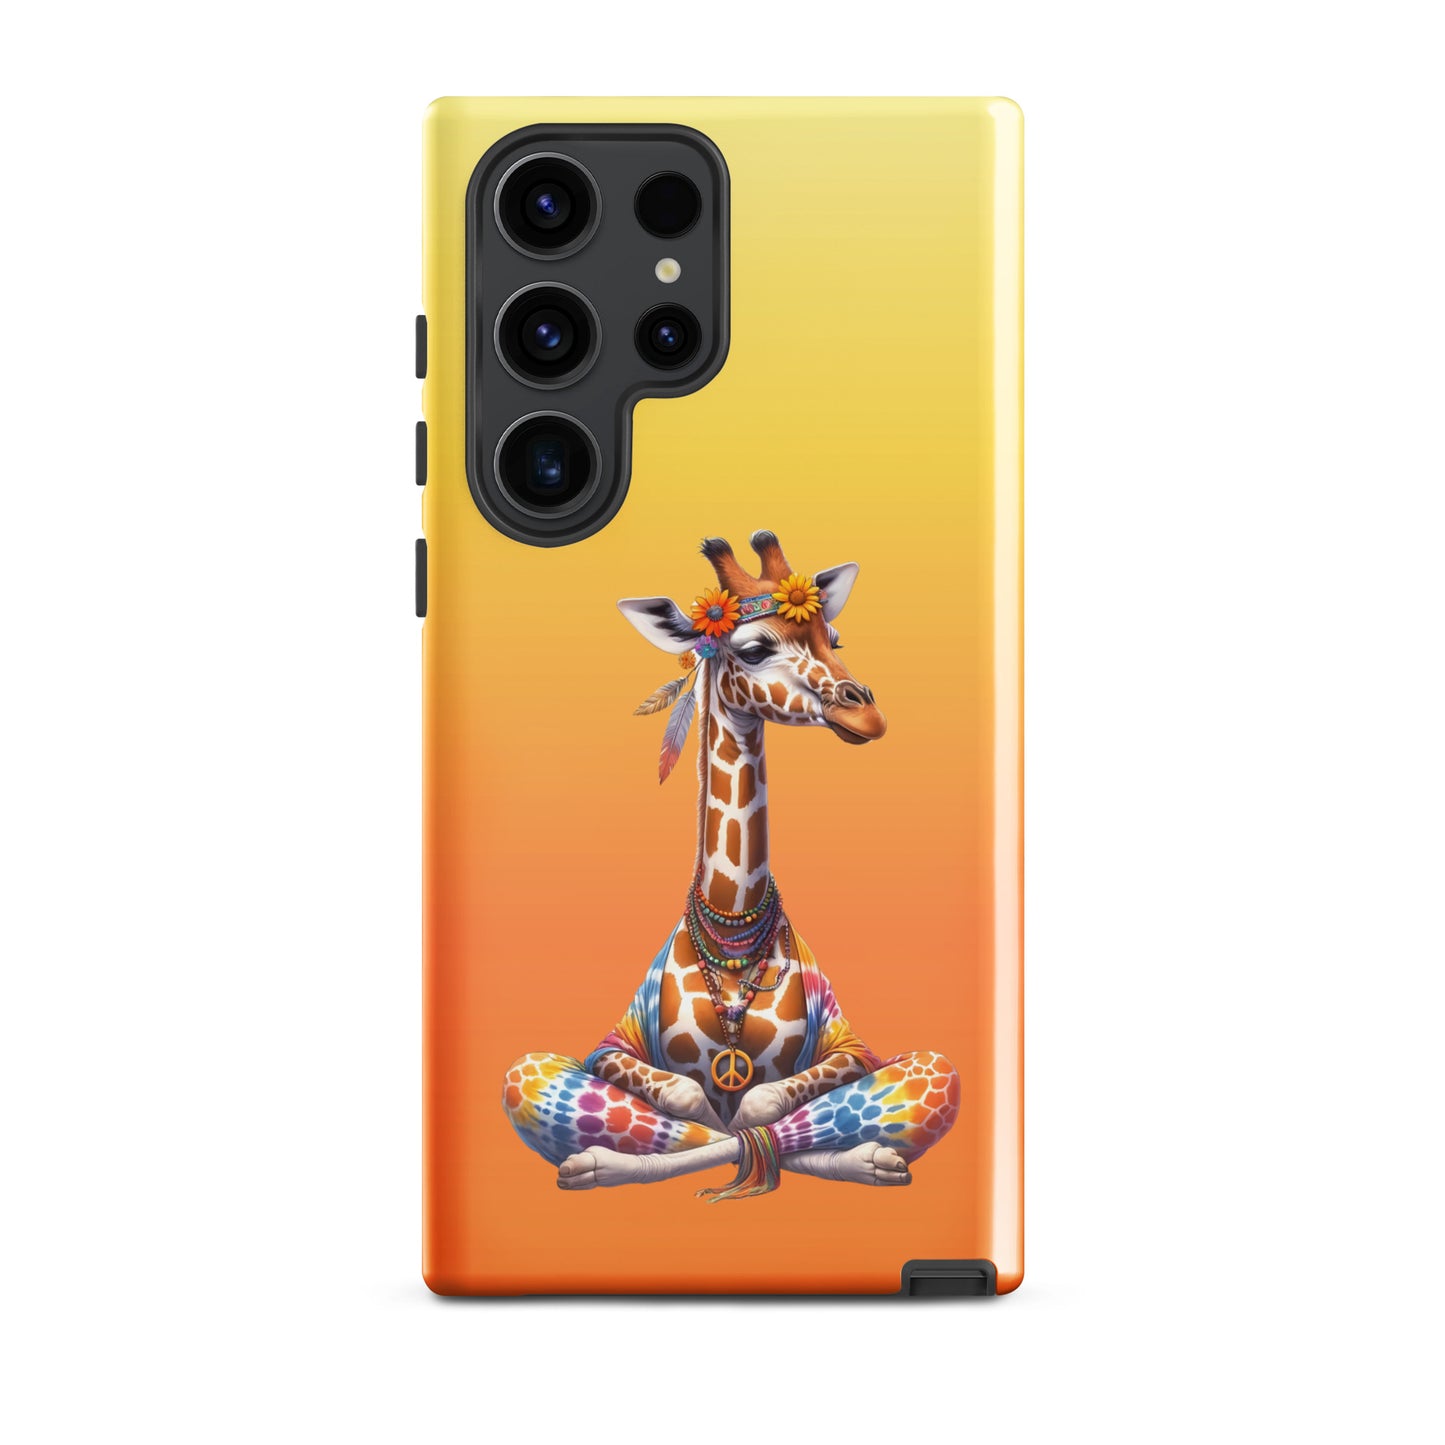 Mellow Giraffe Samsung Case